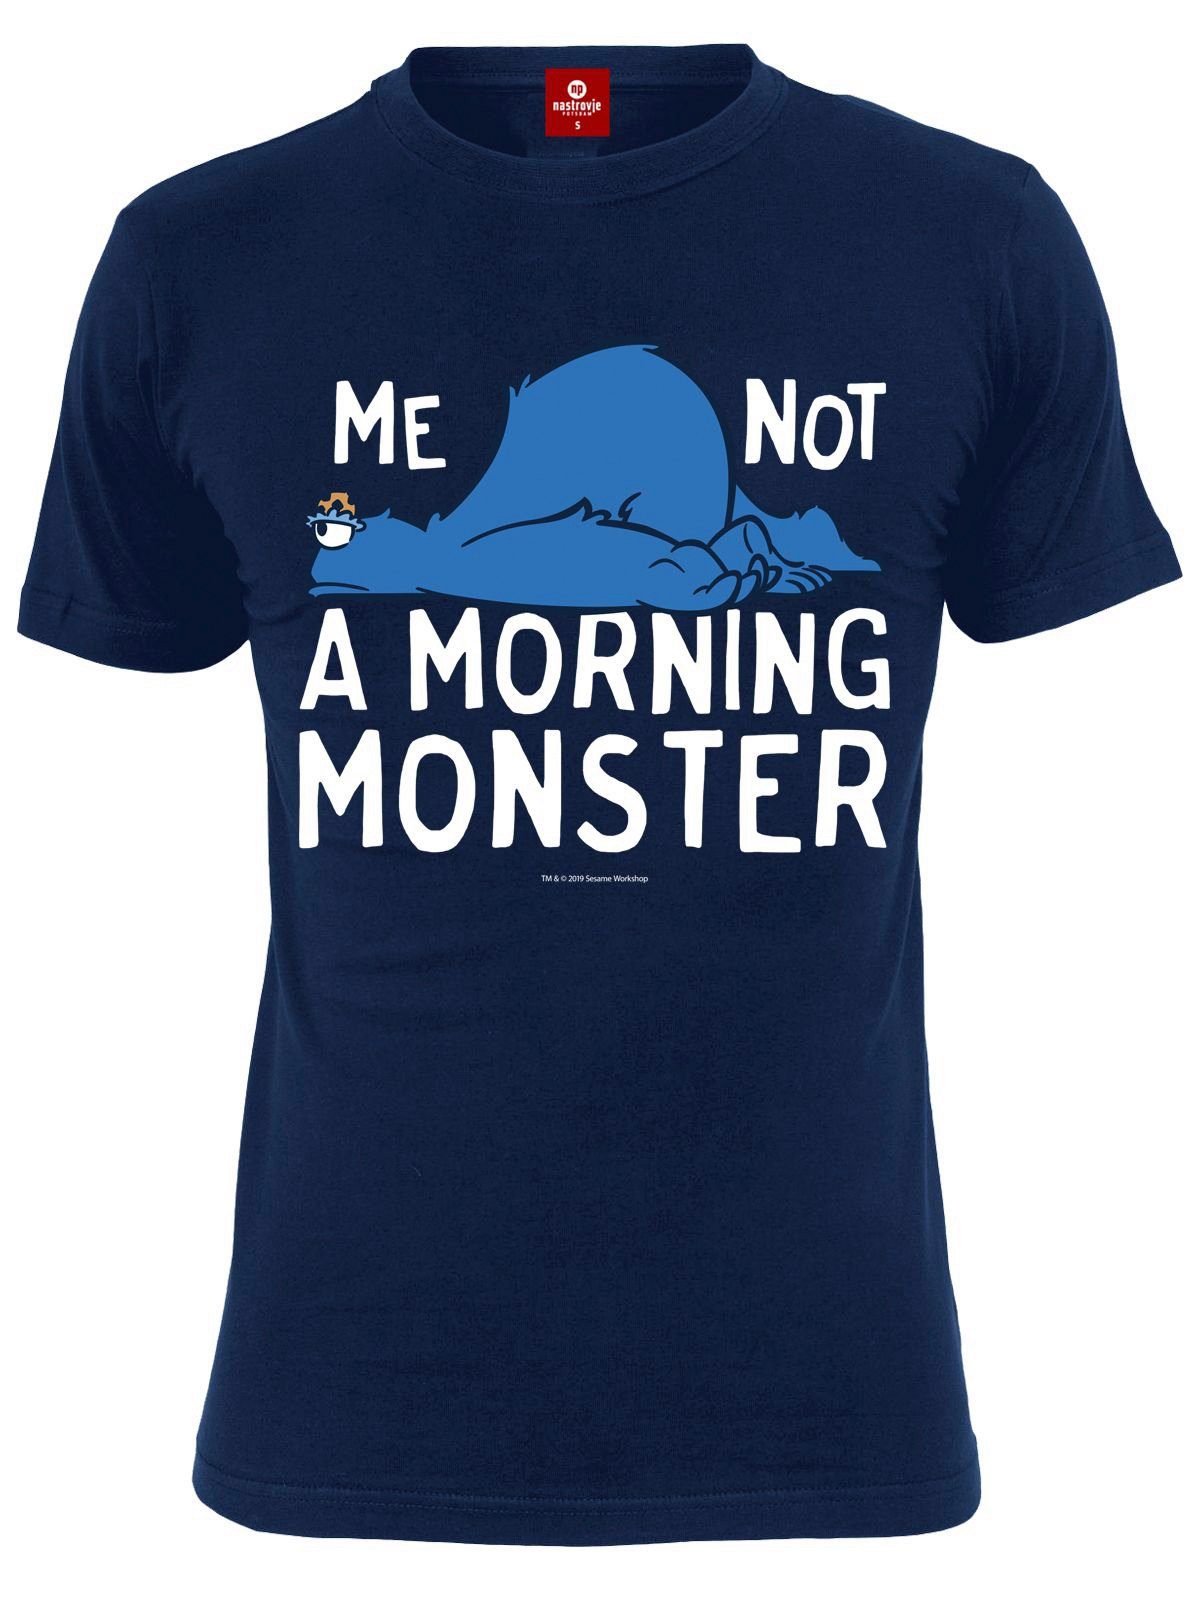 Paladone T-Shirt Sesamstrasse TShirt Morning Monster Krümelmonster S